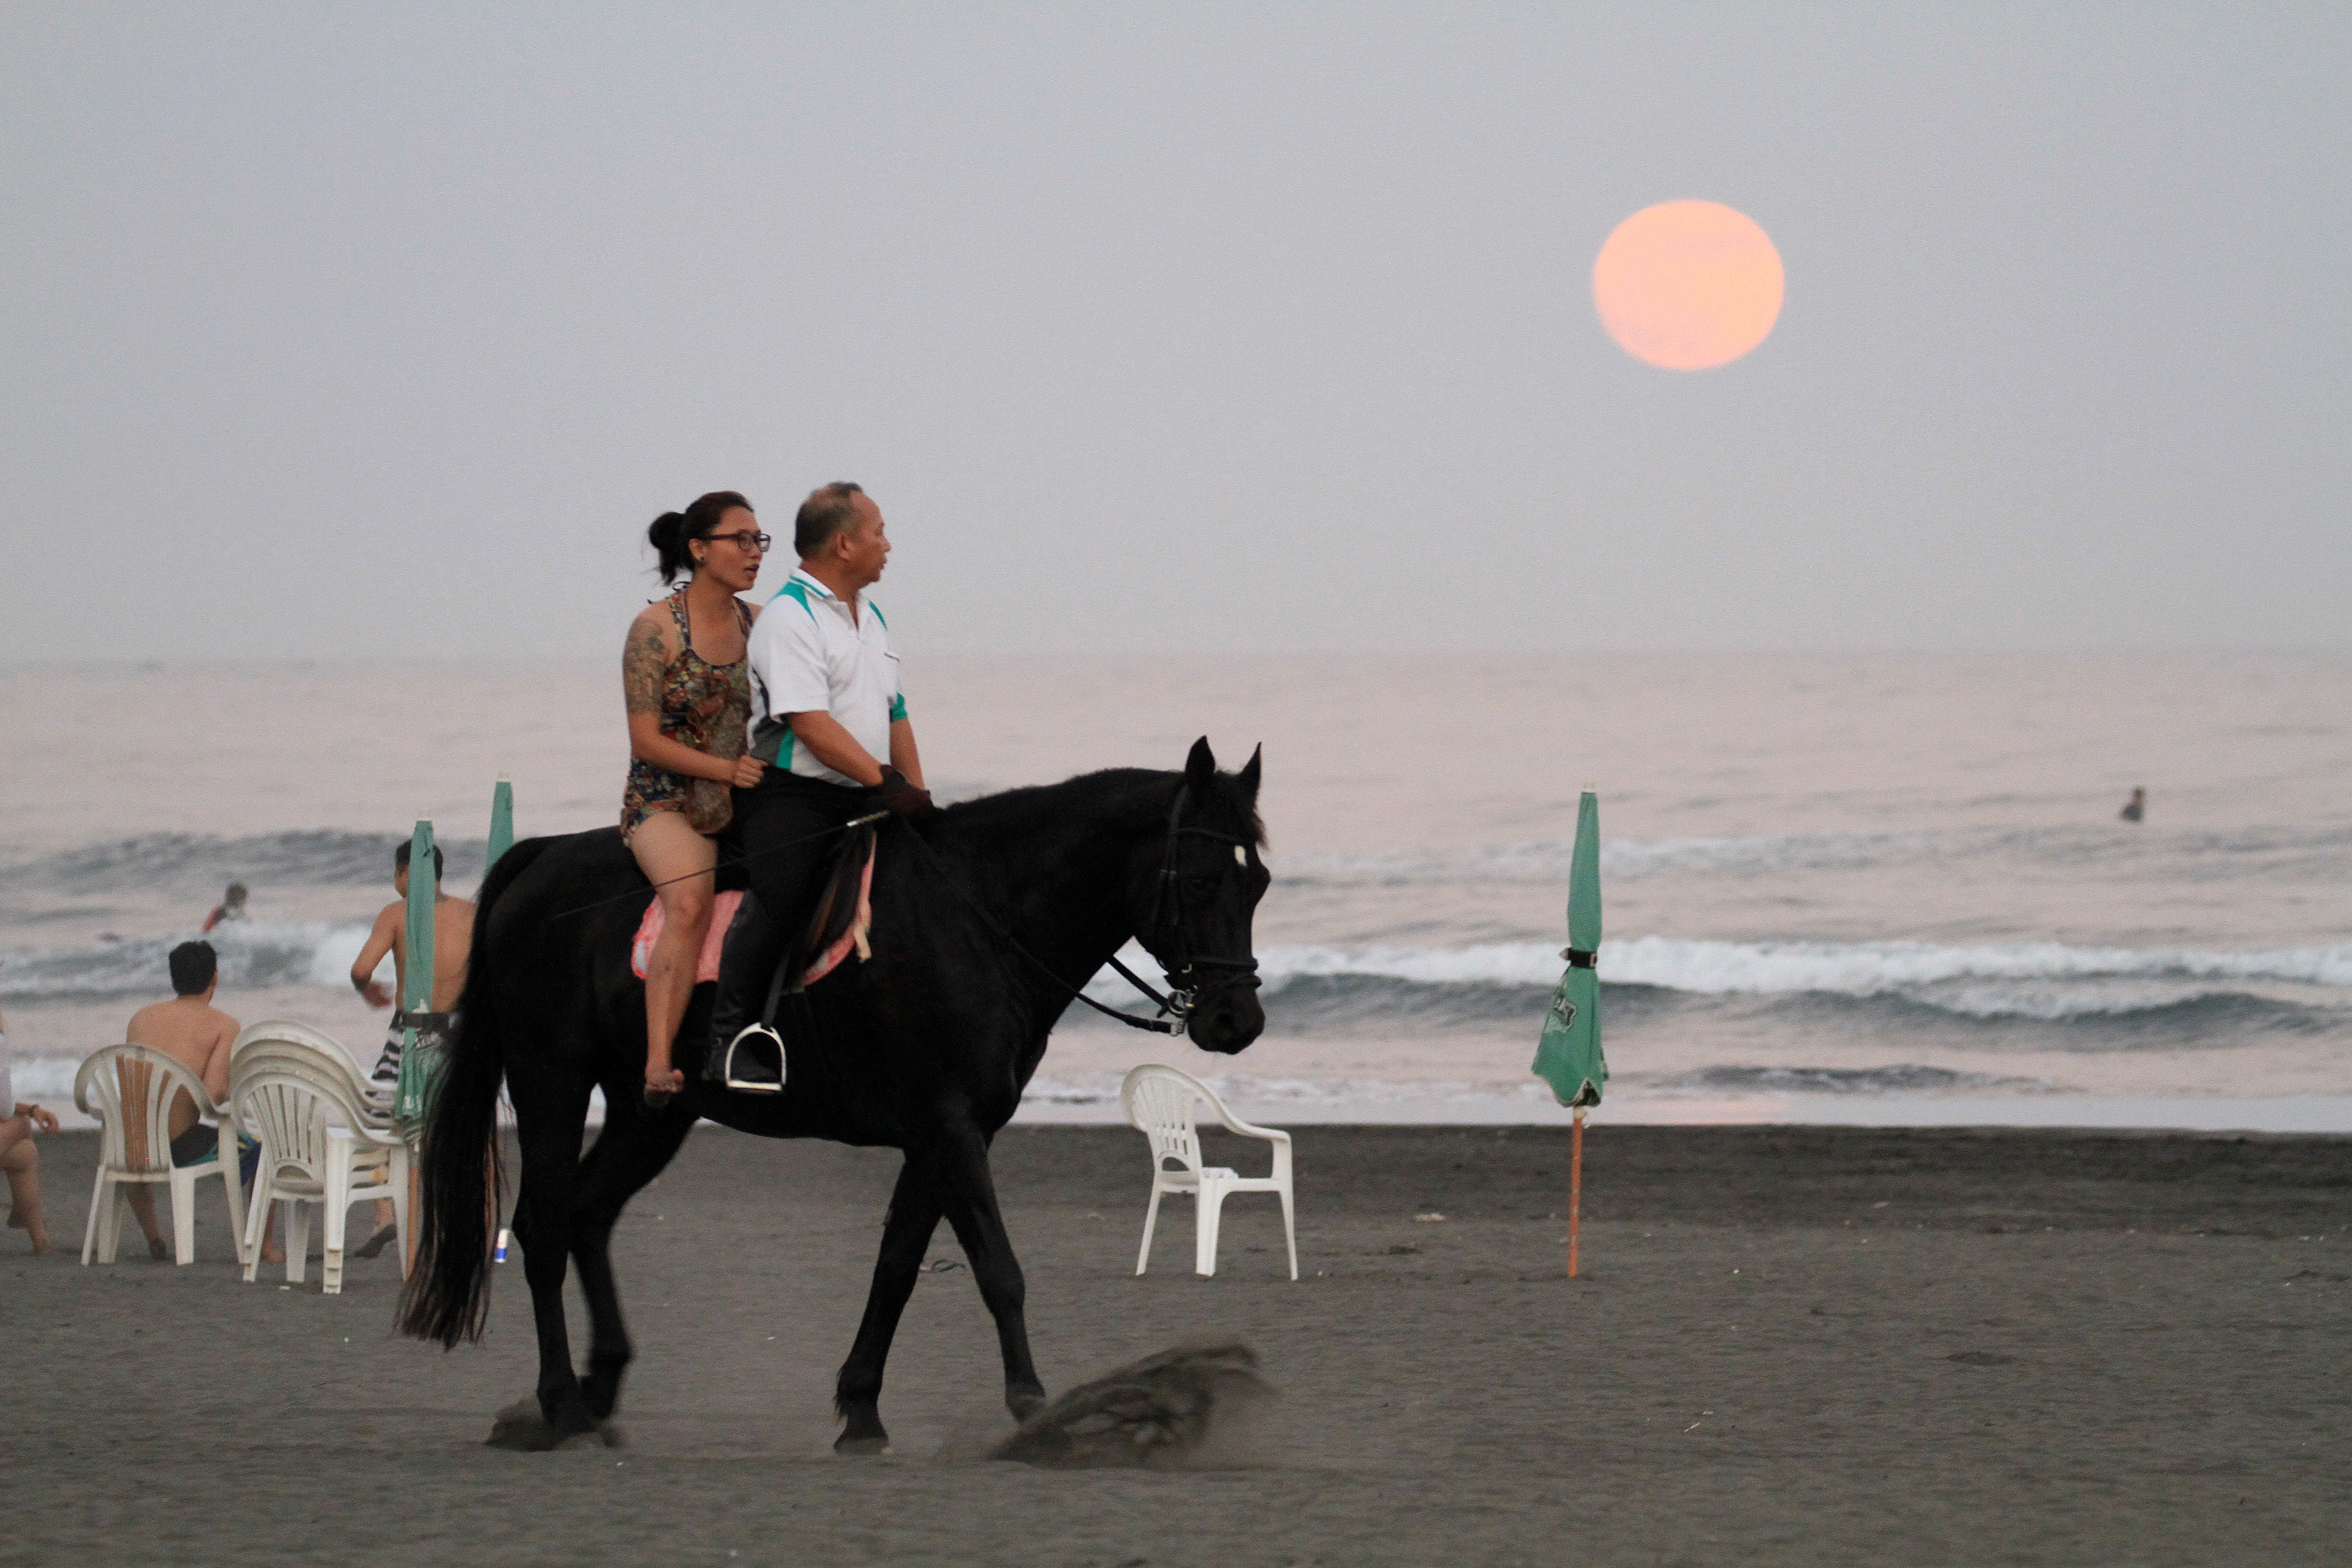 在一輪明月高掛天空下，騎馬漫步海邊別有一番詩意。